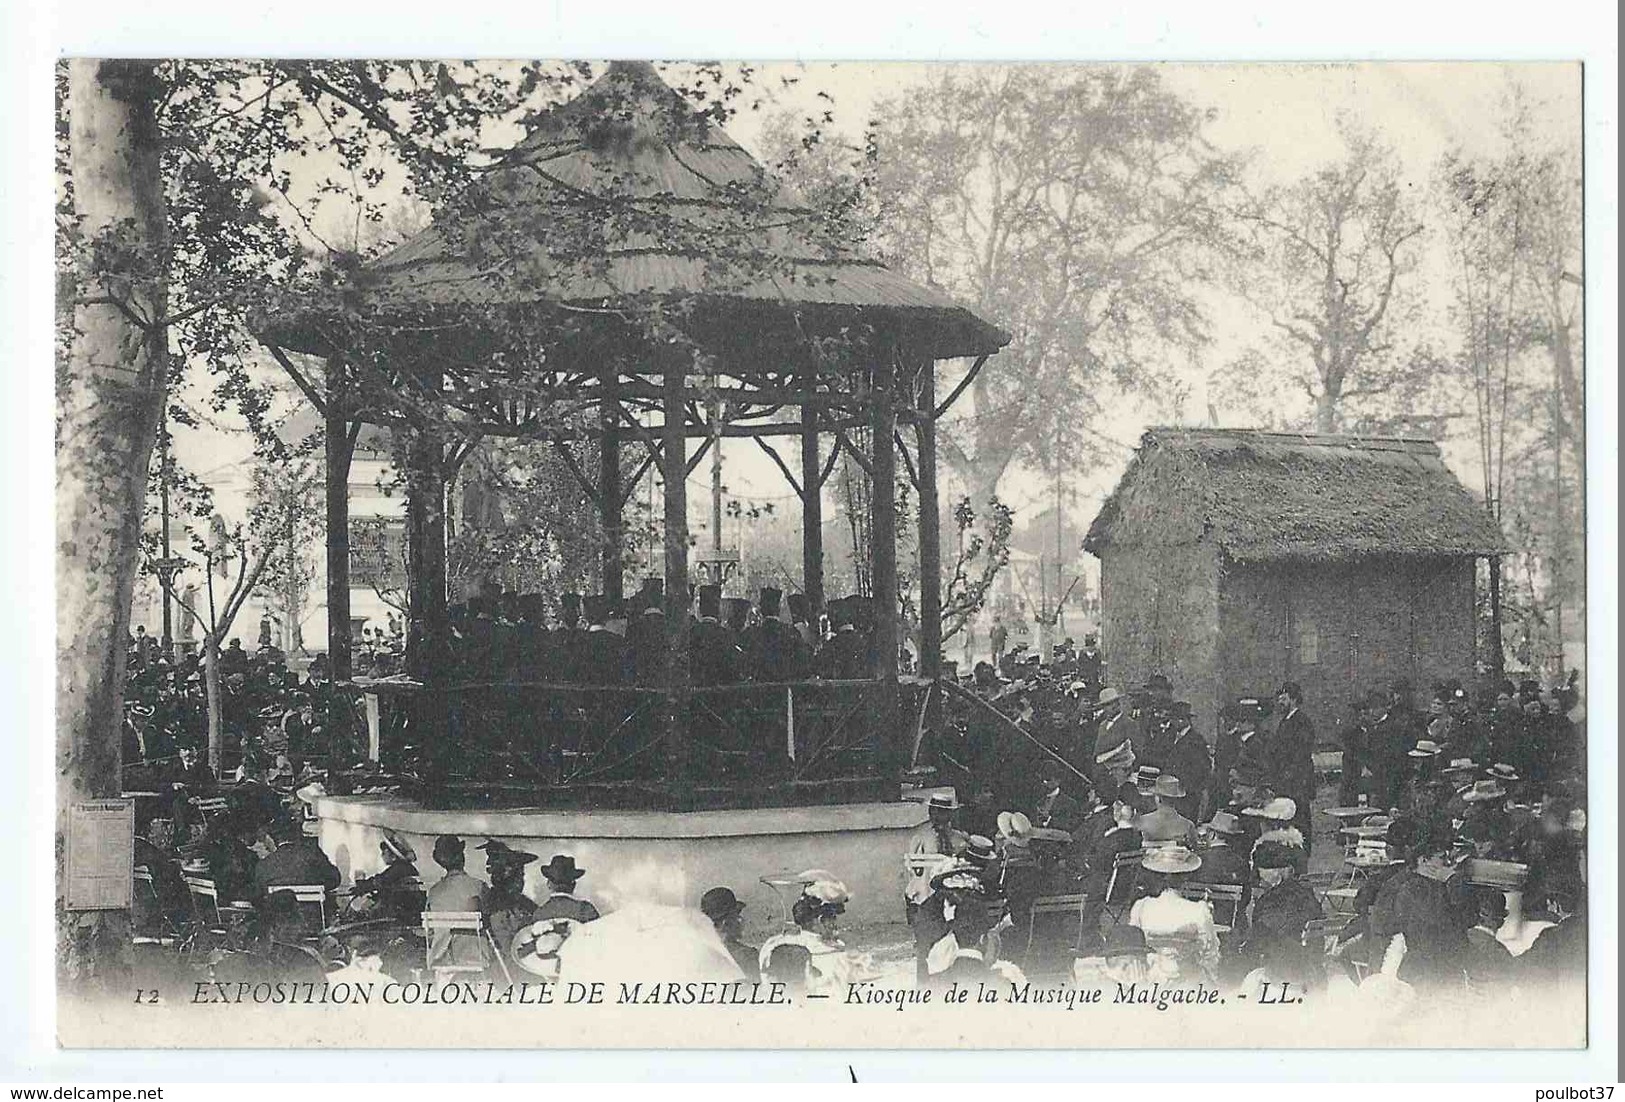 MARSEILLE : exposition coloniale 1906 - superbe lot 72 cartes dont ballon captif, Laos, Tunisie, Cochinchine. Tous scans